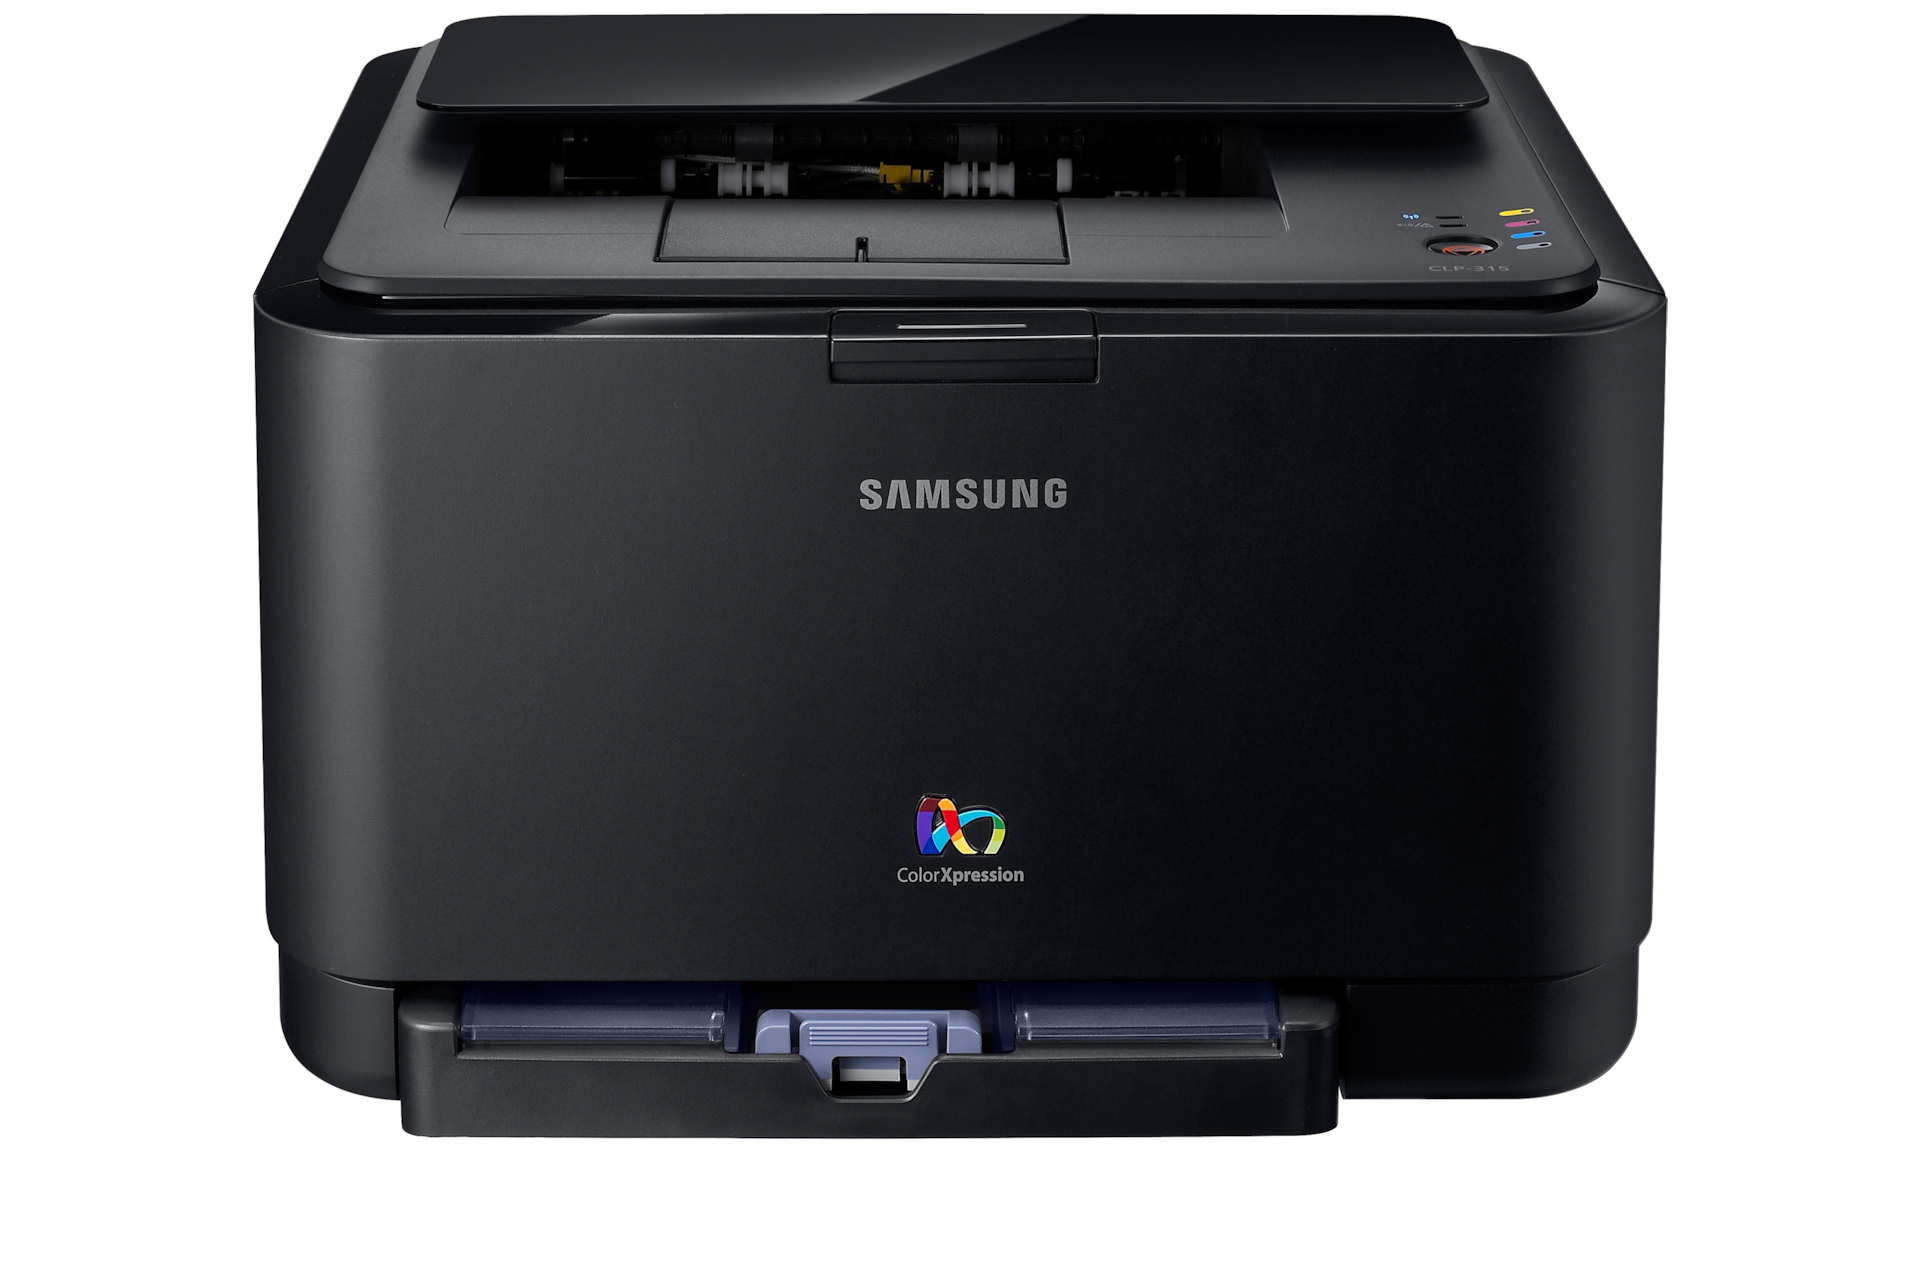 Samsung Color Laser Printer   on Impresora L  Ser Color Clp 315   Informaci  N General   Samsung